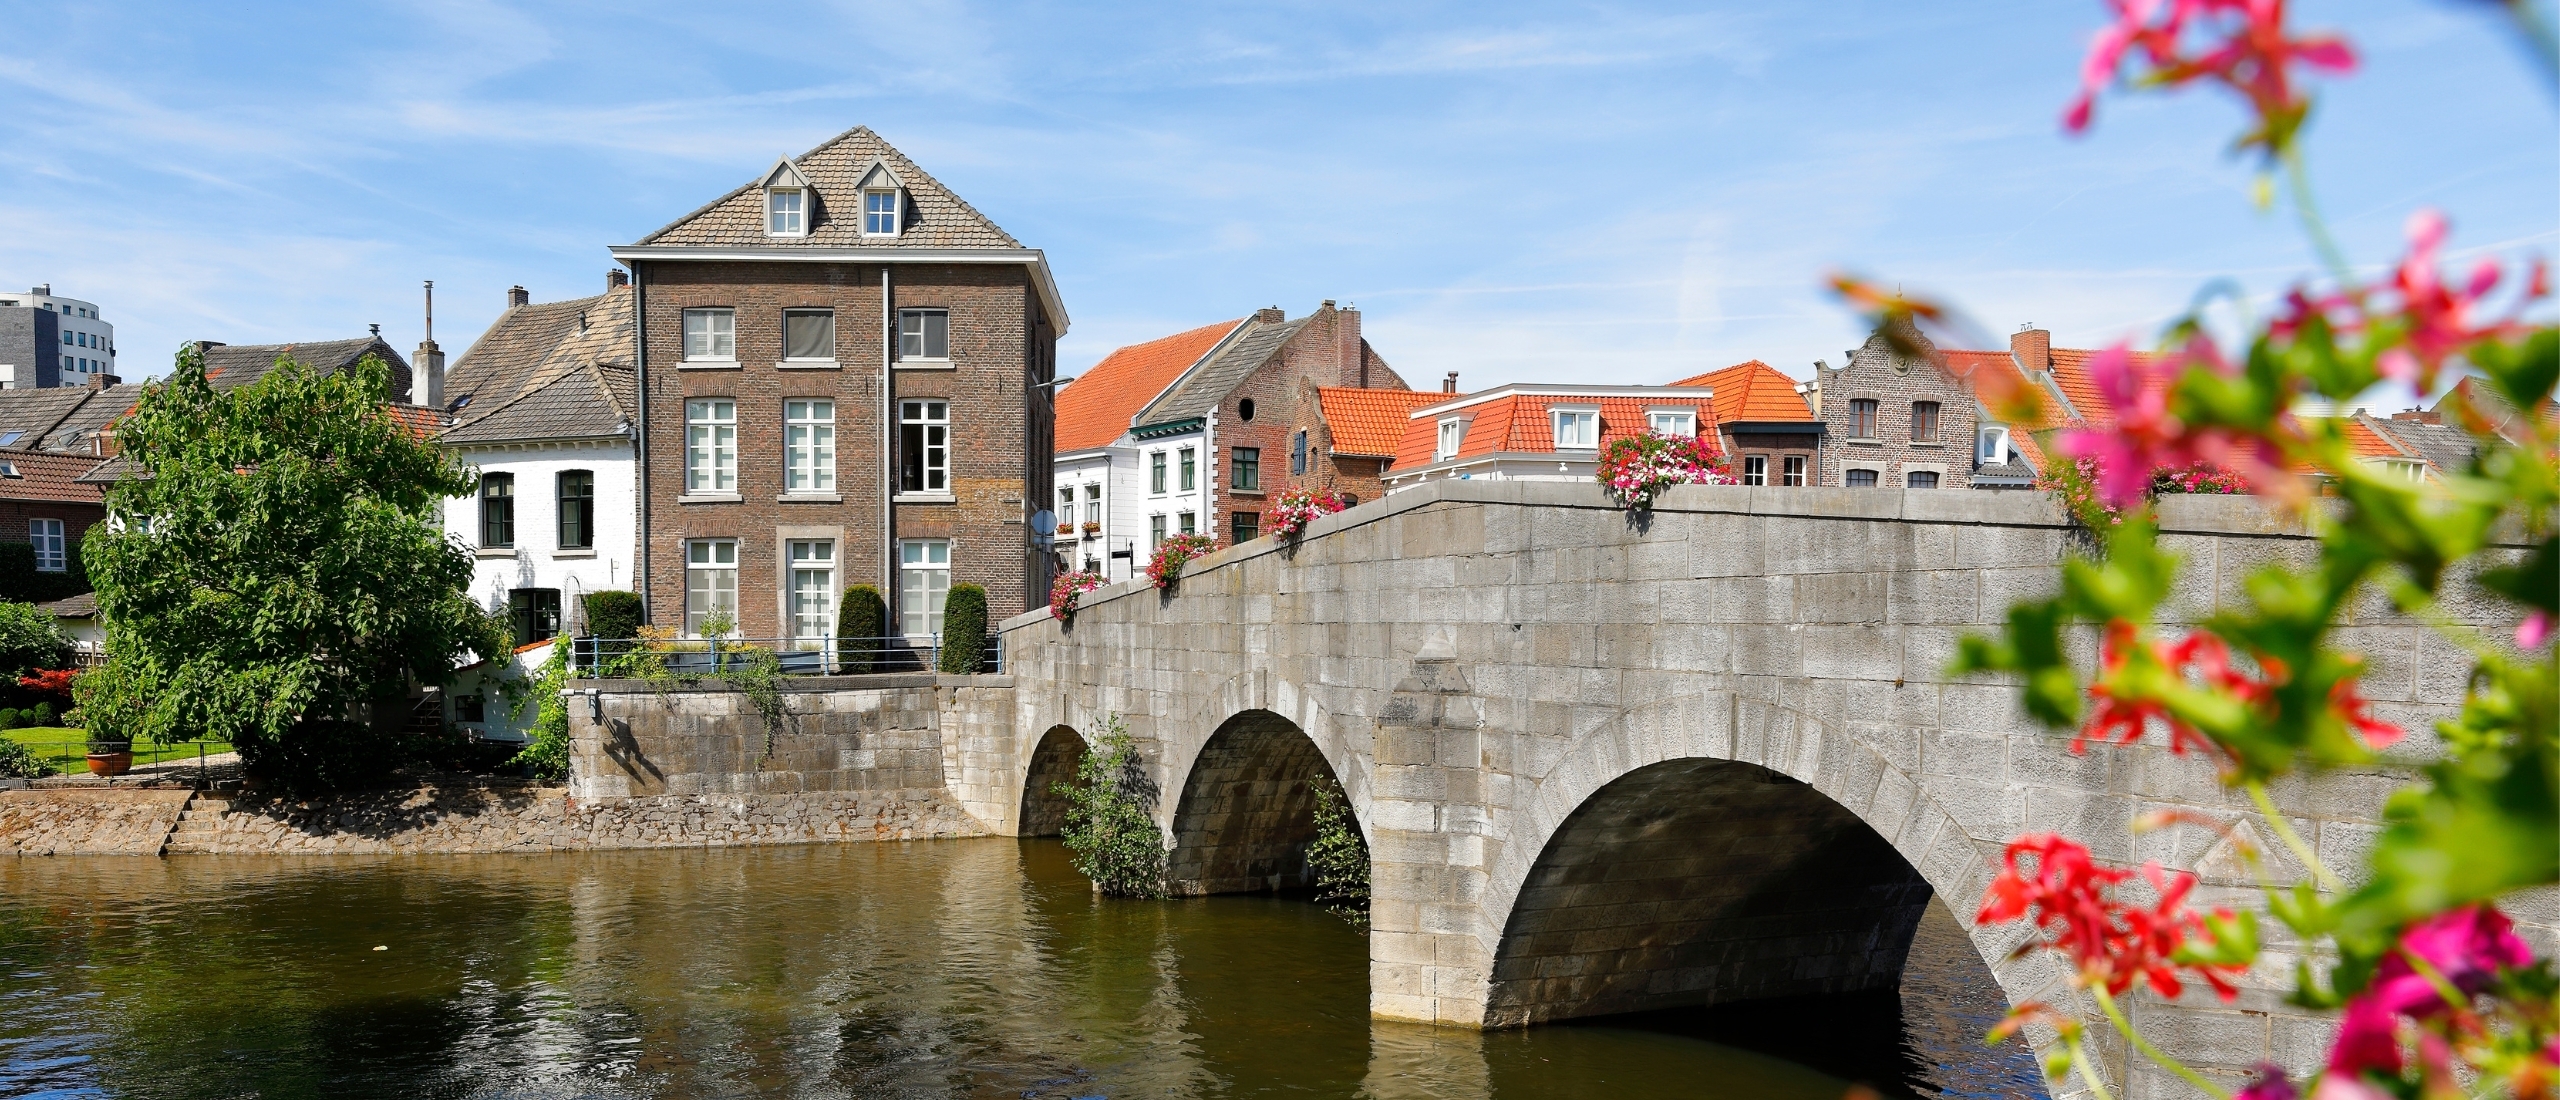 Wat is er te doen in Roermond? De leukste tips voor een dagje of weekendje weg in deze bruisende stad.